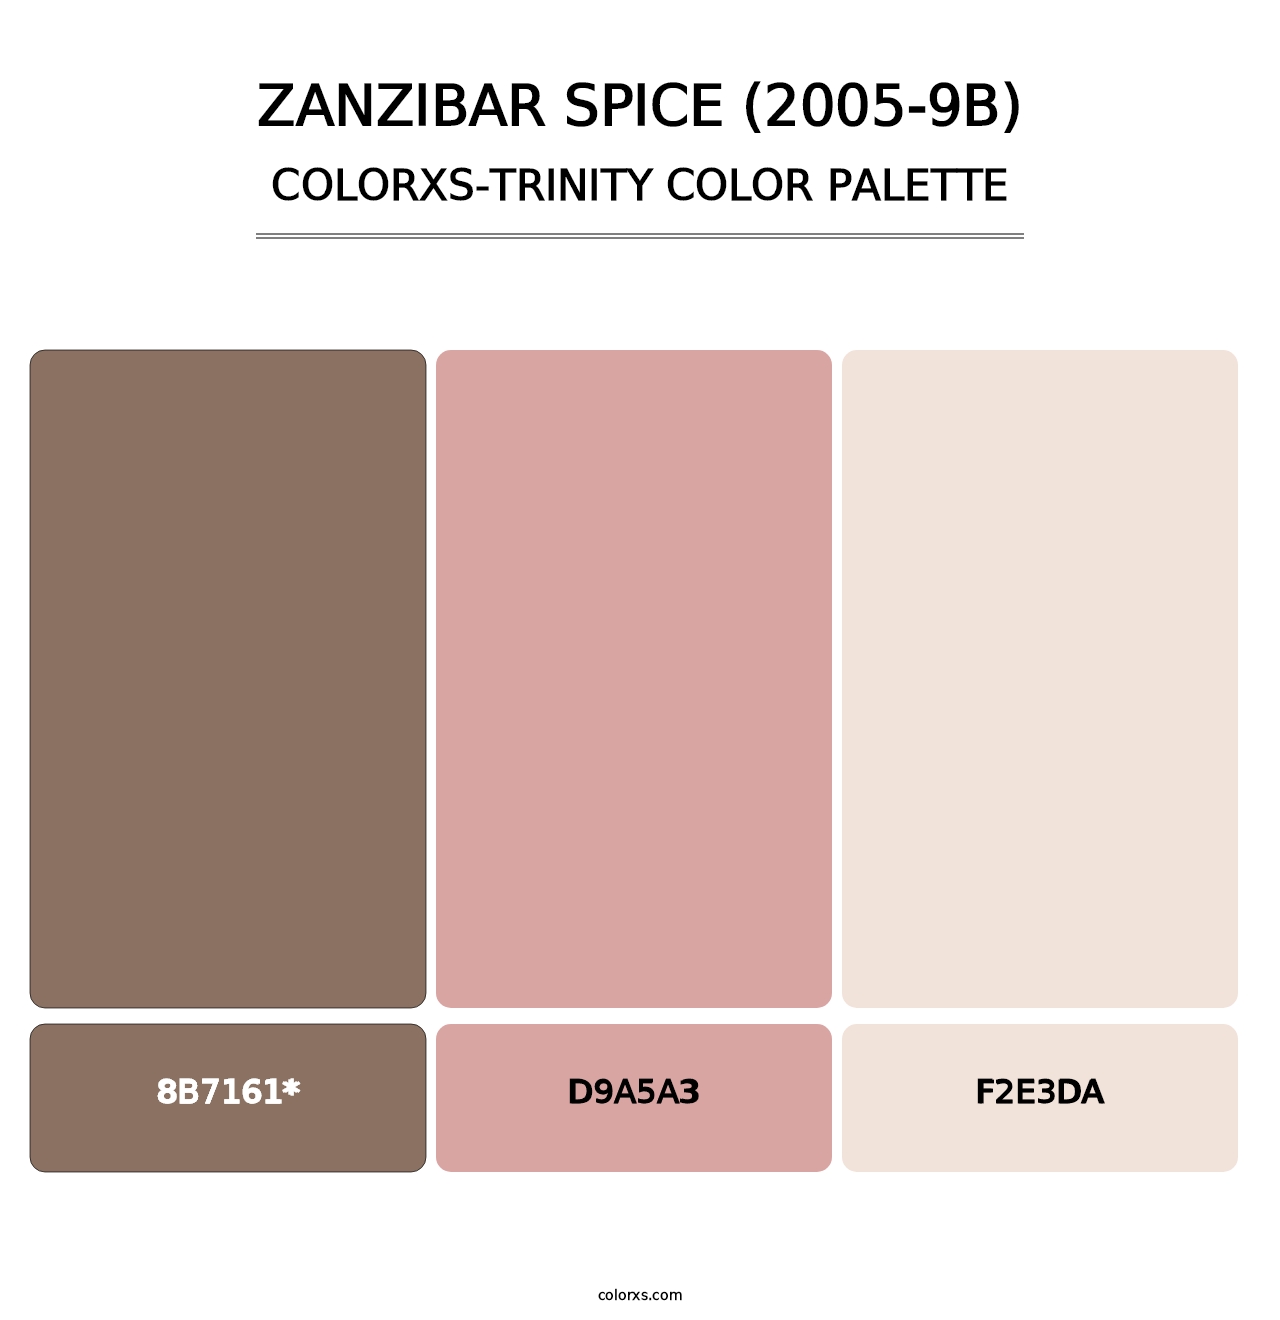 Zanzibar Spice (2005-9B) - Colorxs Trinity Palette